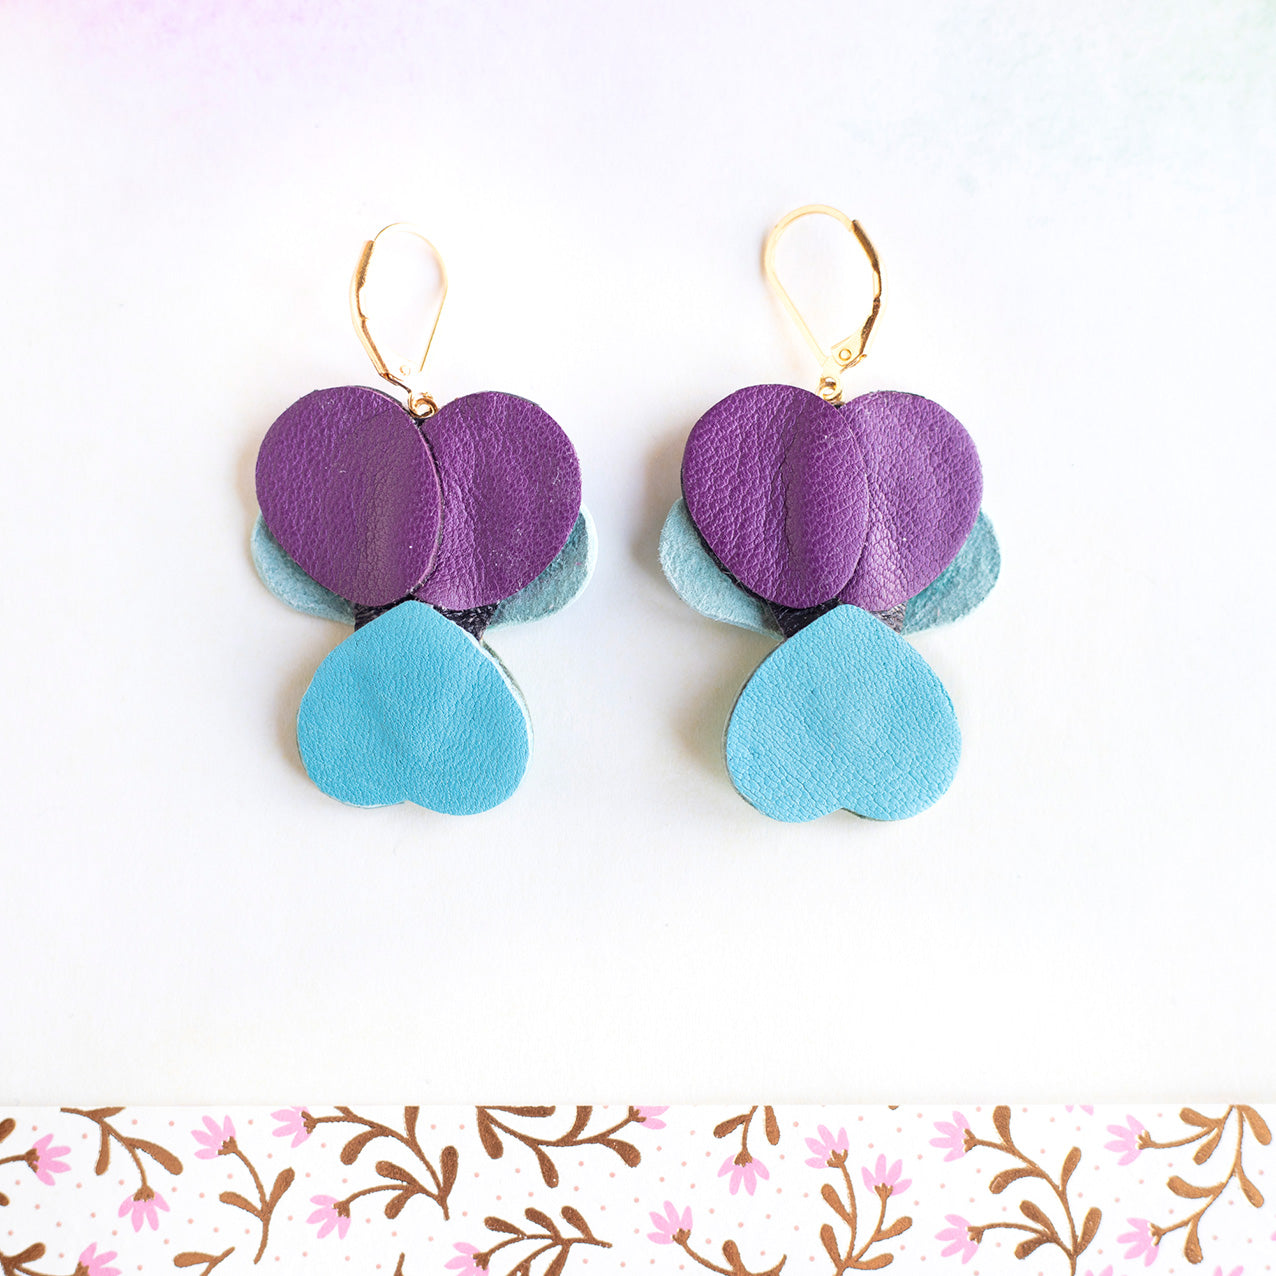 Boucles d’oreilles Pensées - bleu et violet métallisé